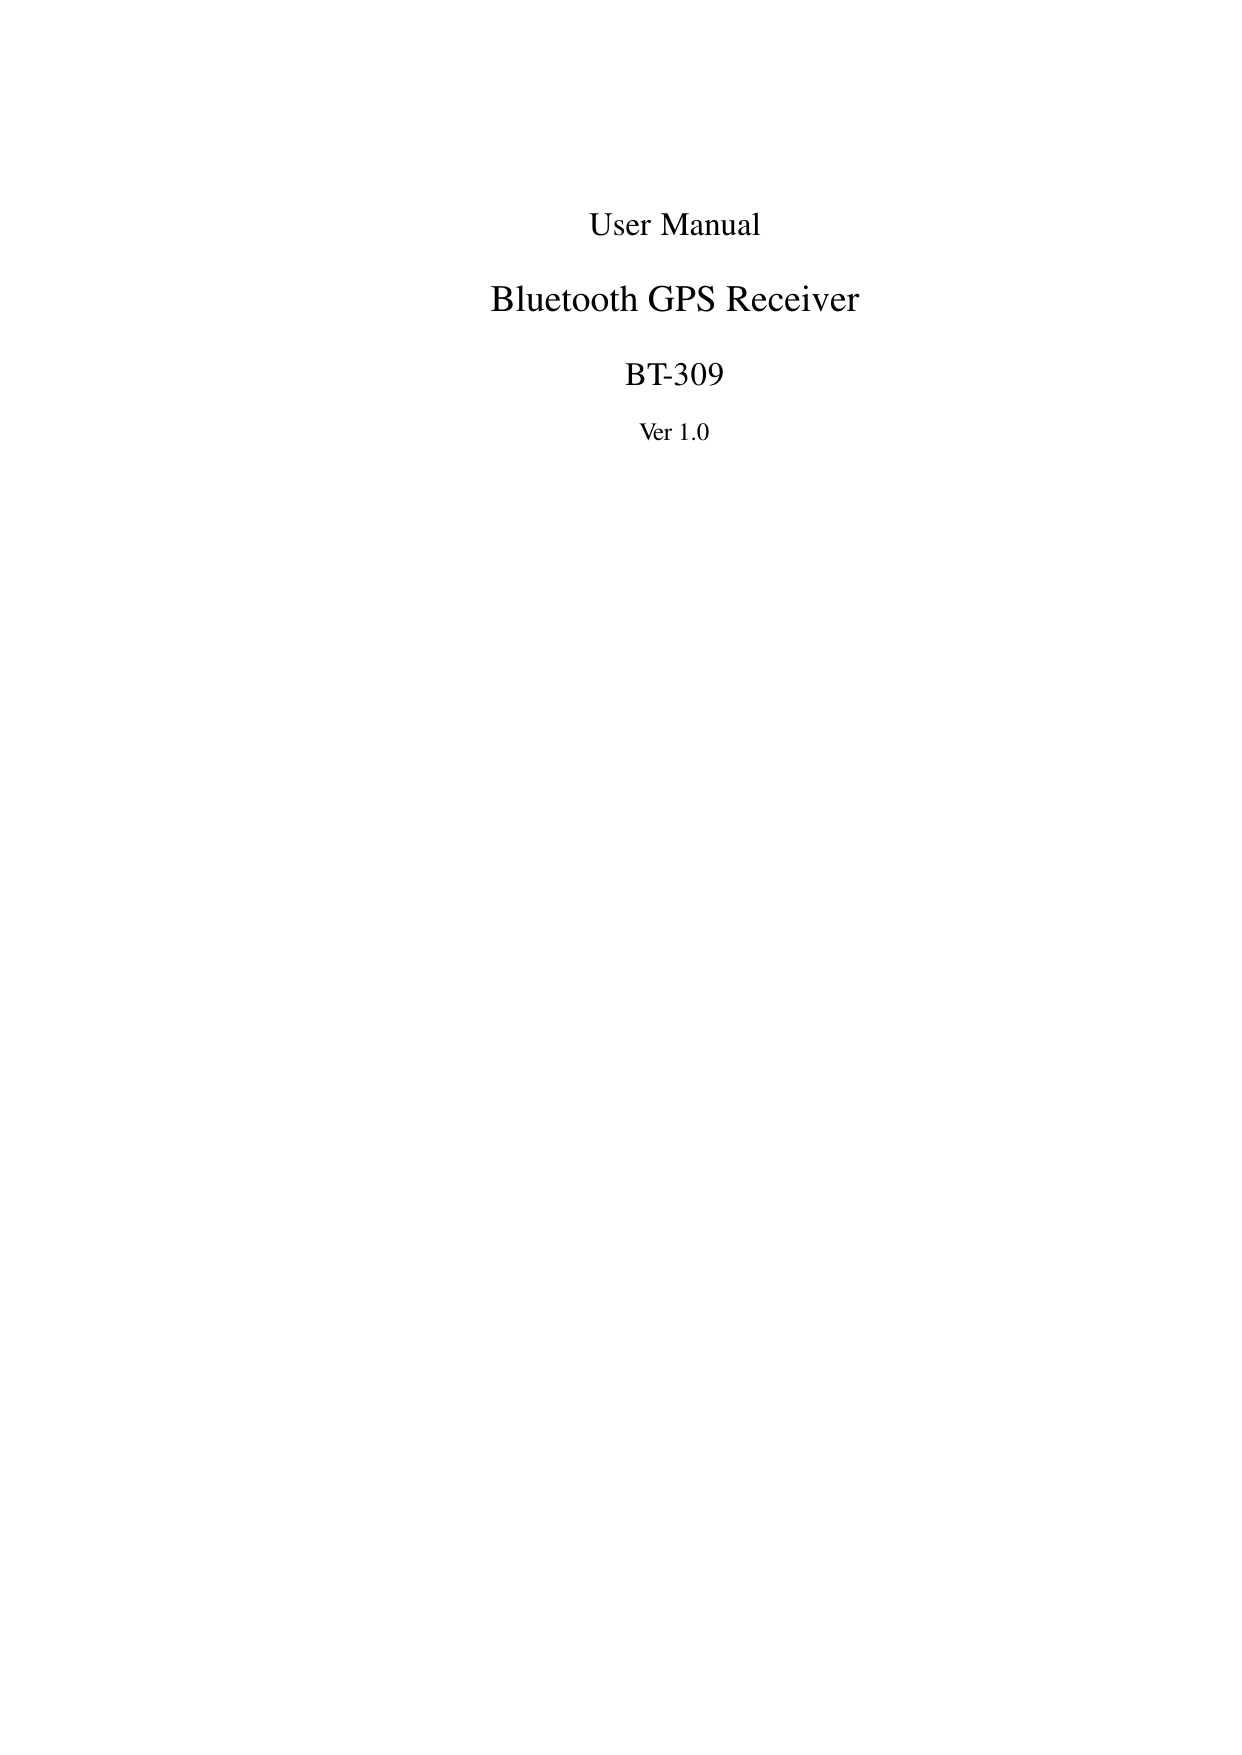   User Manual Bluetooth GPS Receiver BT-309 Ver 1.0                                 